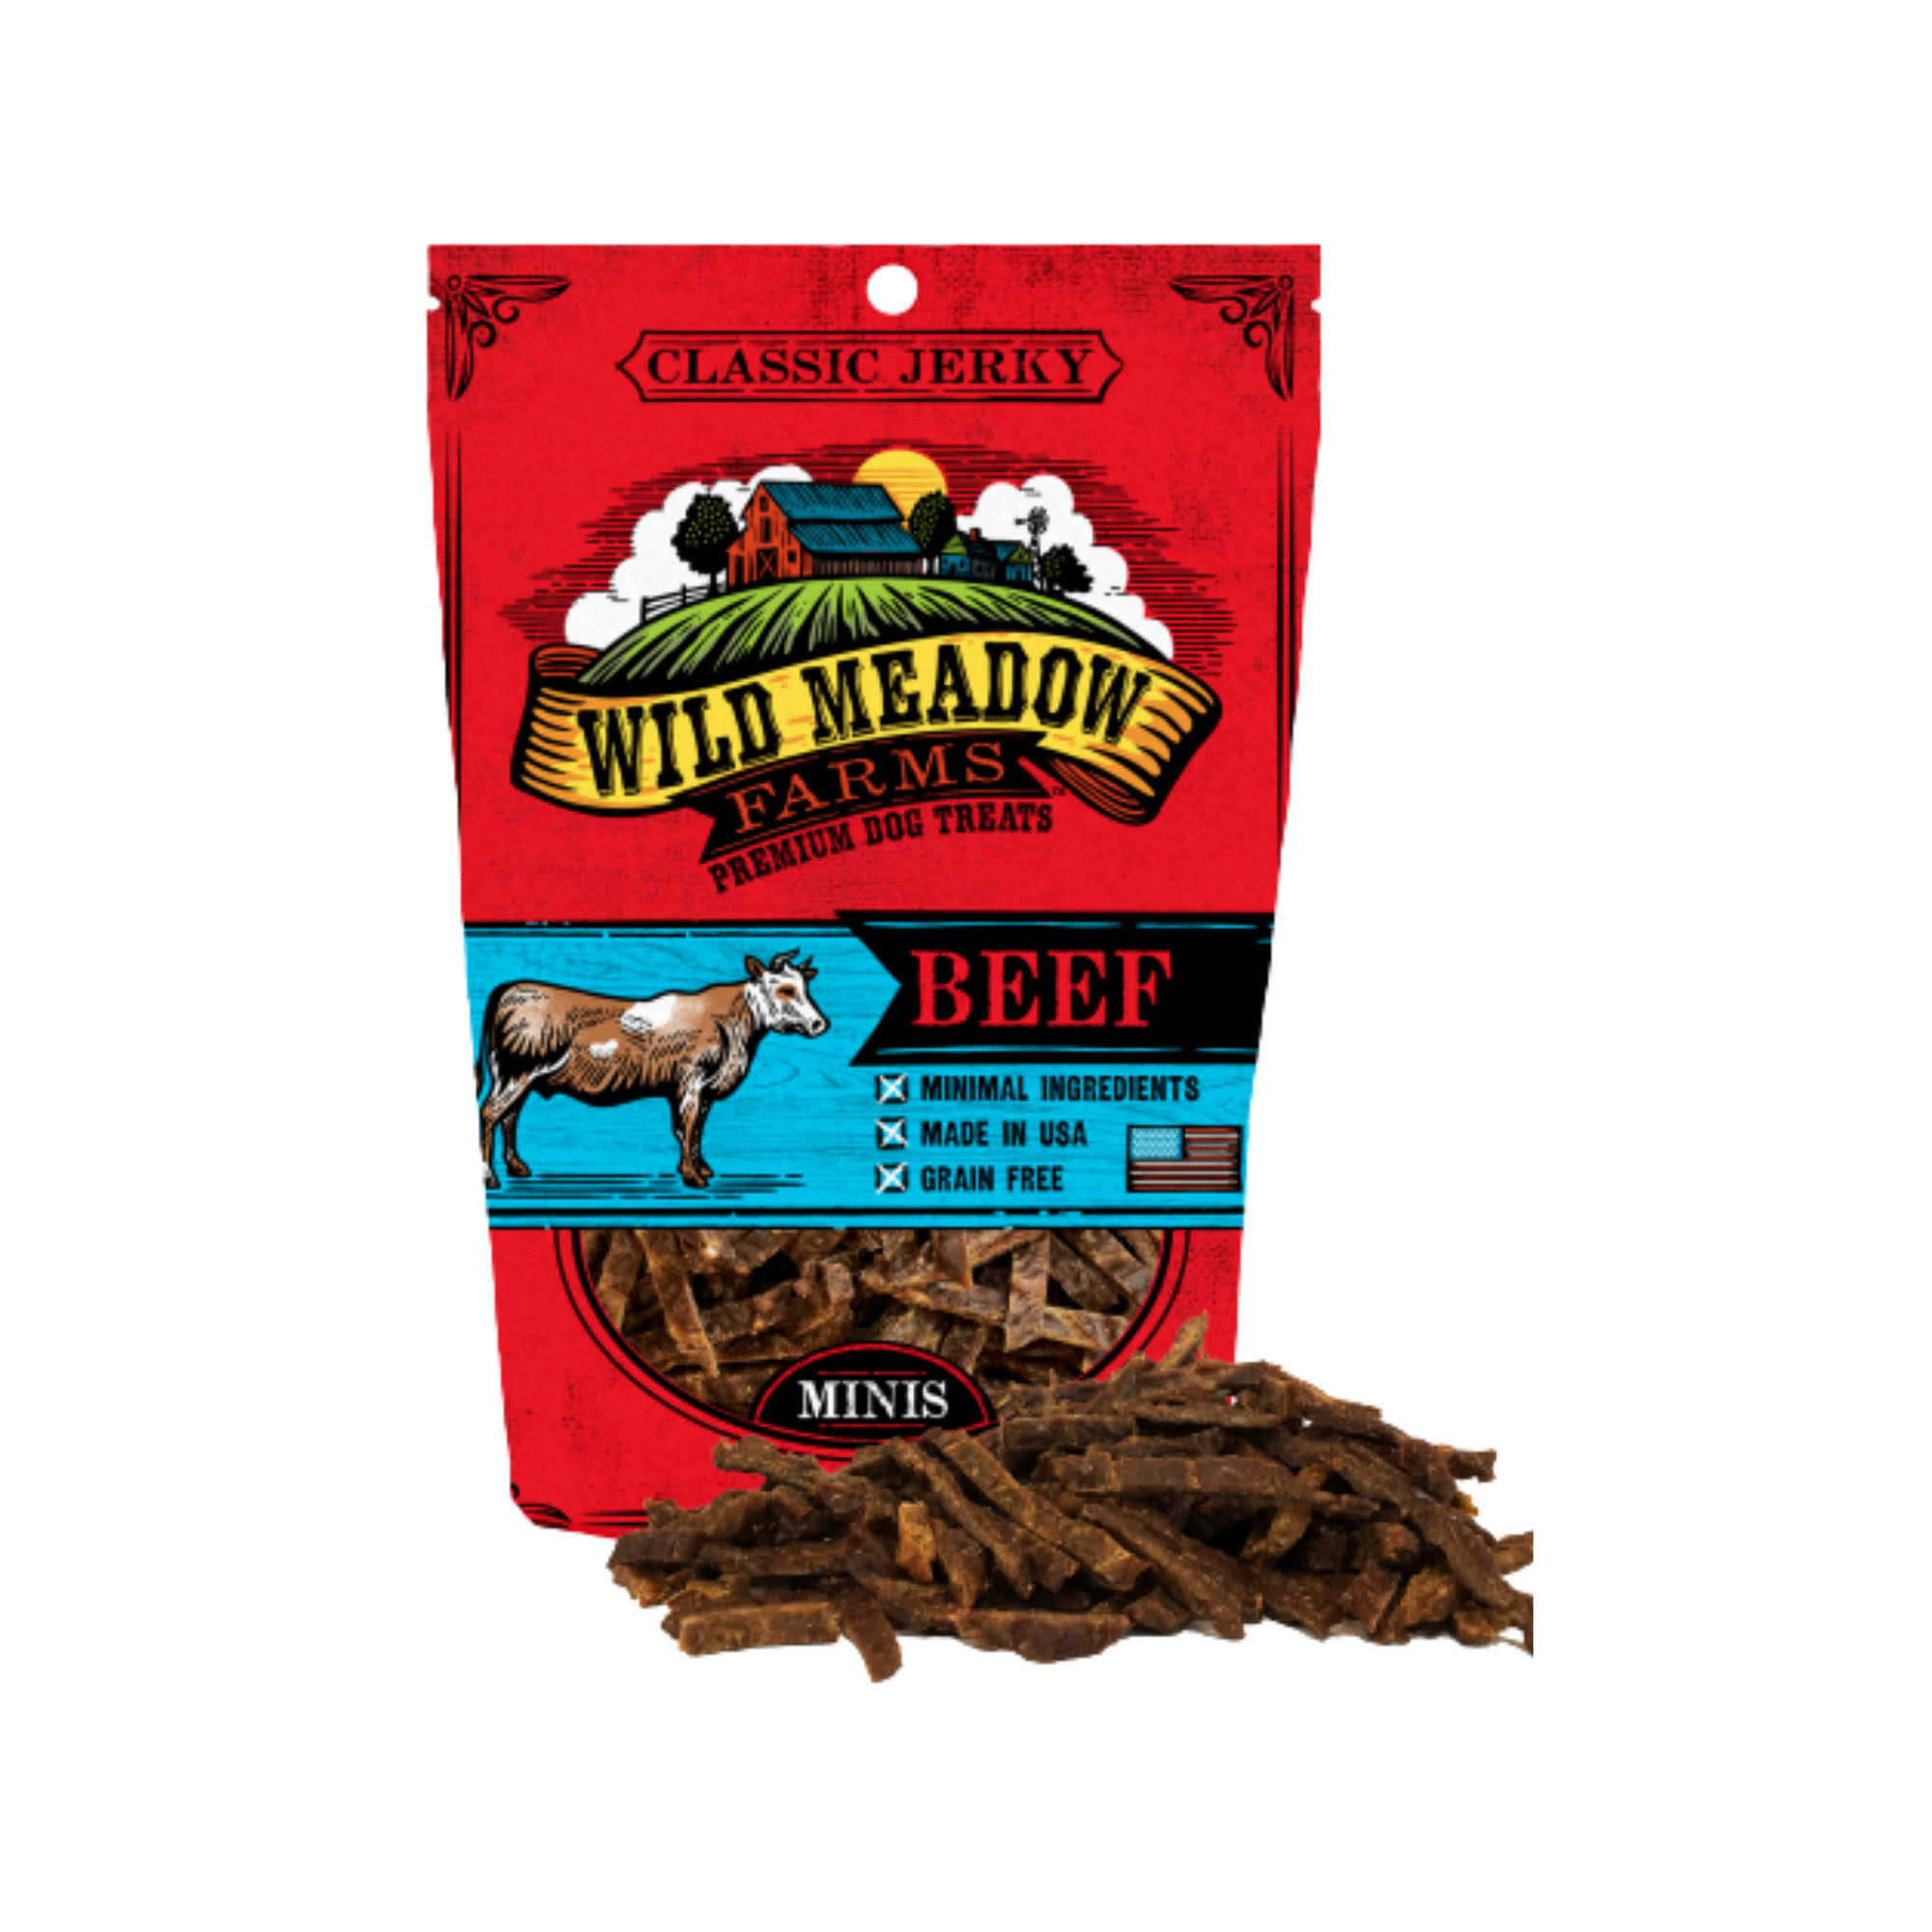 Wild Meadow Farms Classic Jerky Minis Beef Dog Treats, 4-oz